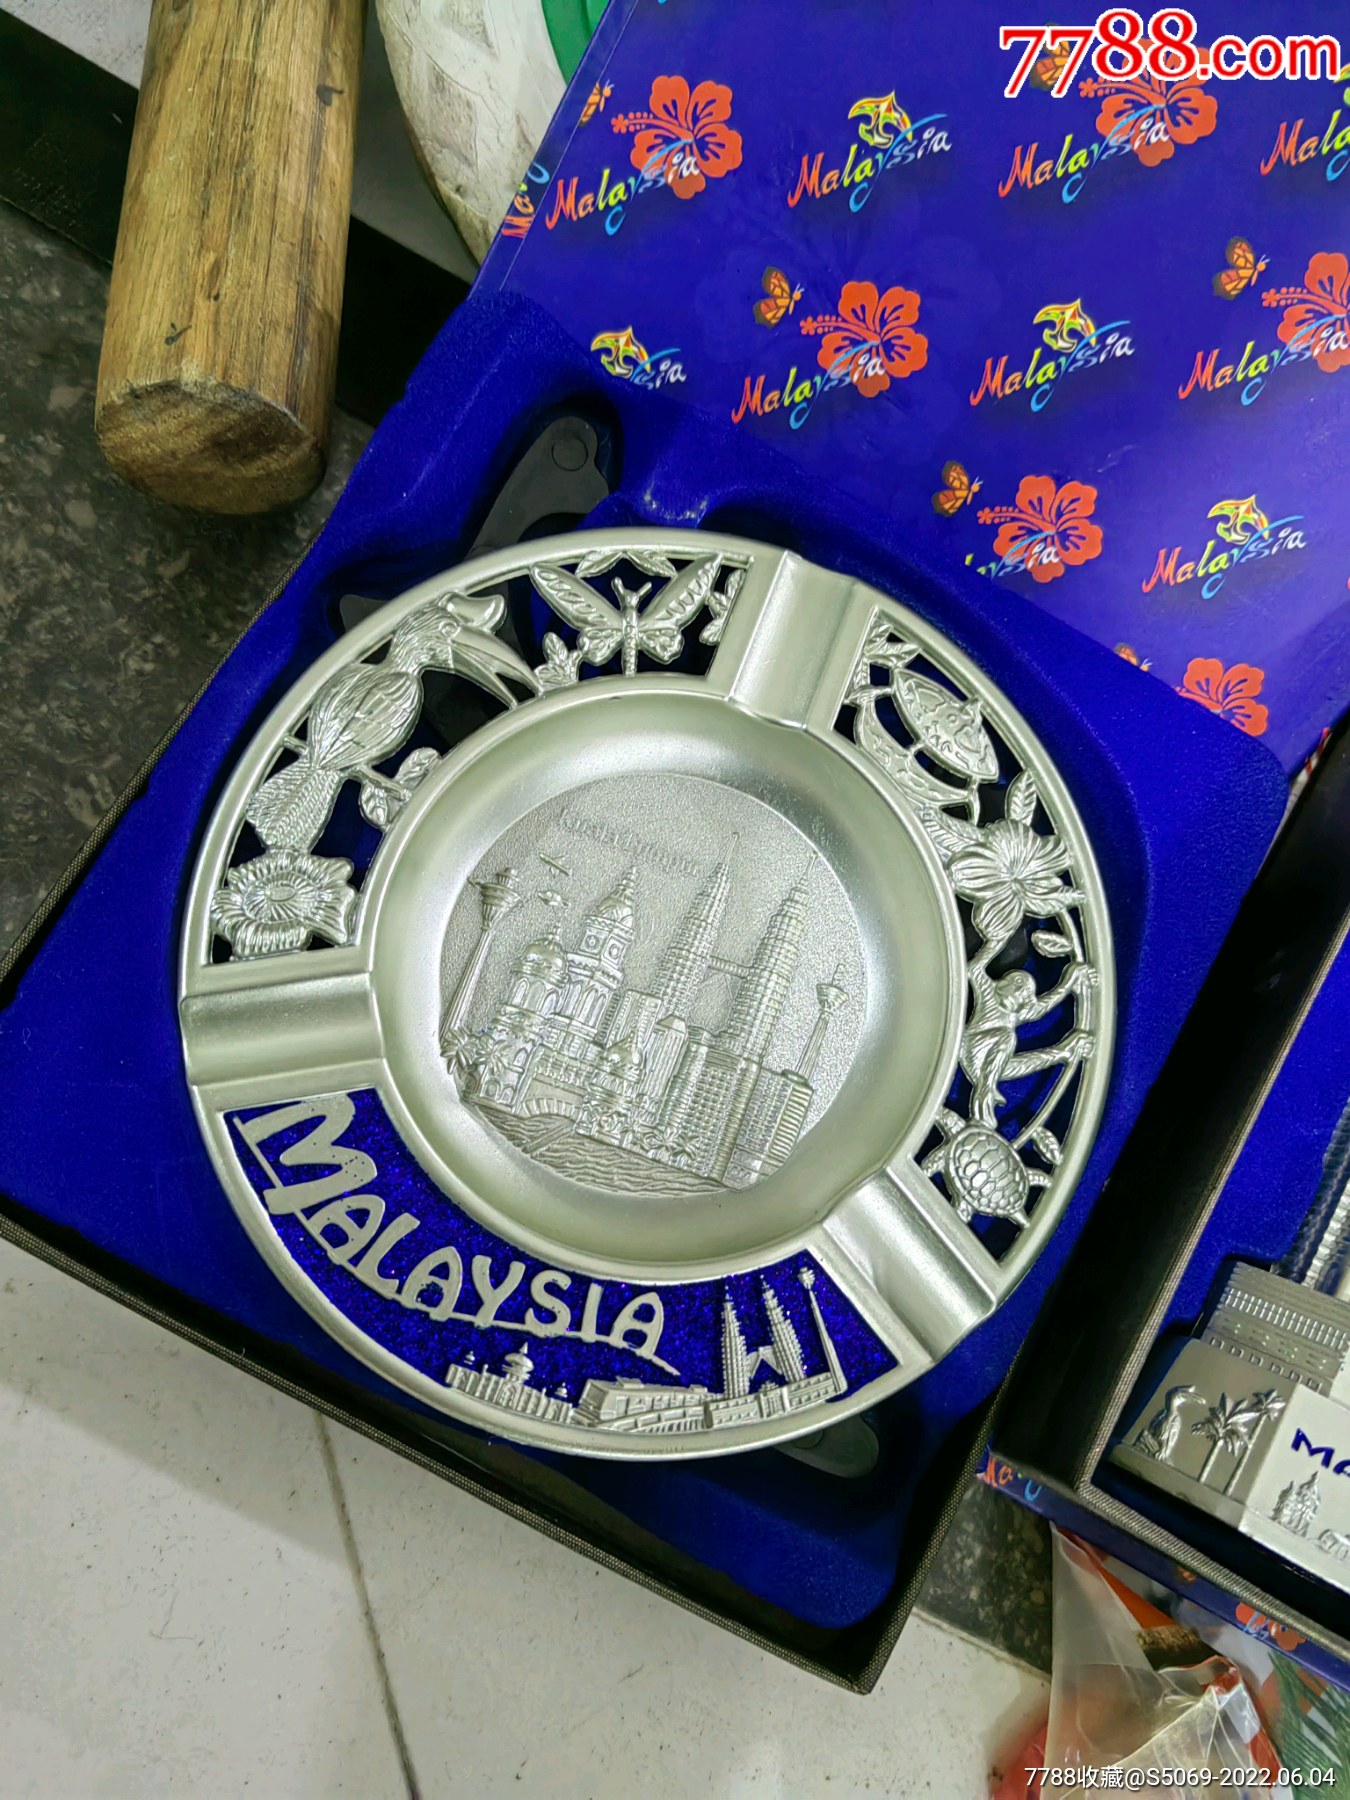 马来西亚槟城古代古代新艺术款珠手袋刺绣艺术工艺品尼亚·诺亚衣柜绿屋 库存图片 - 图片 包括有 文化, 机柜: 220883087